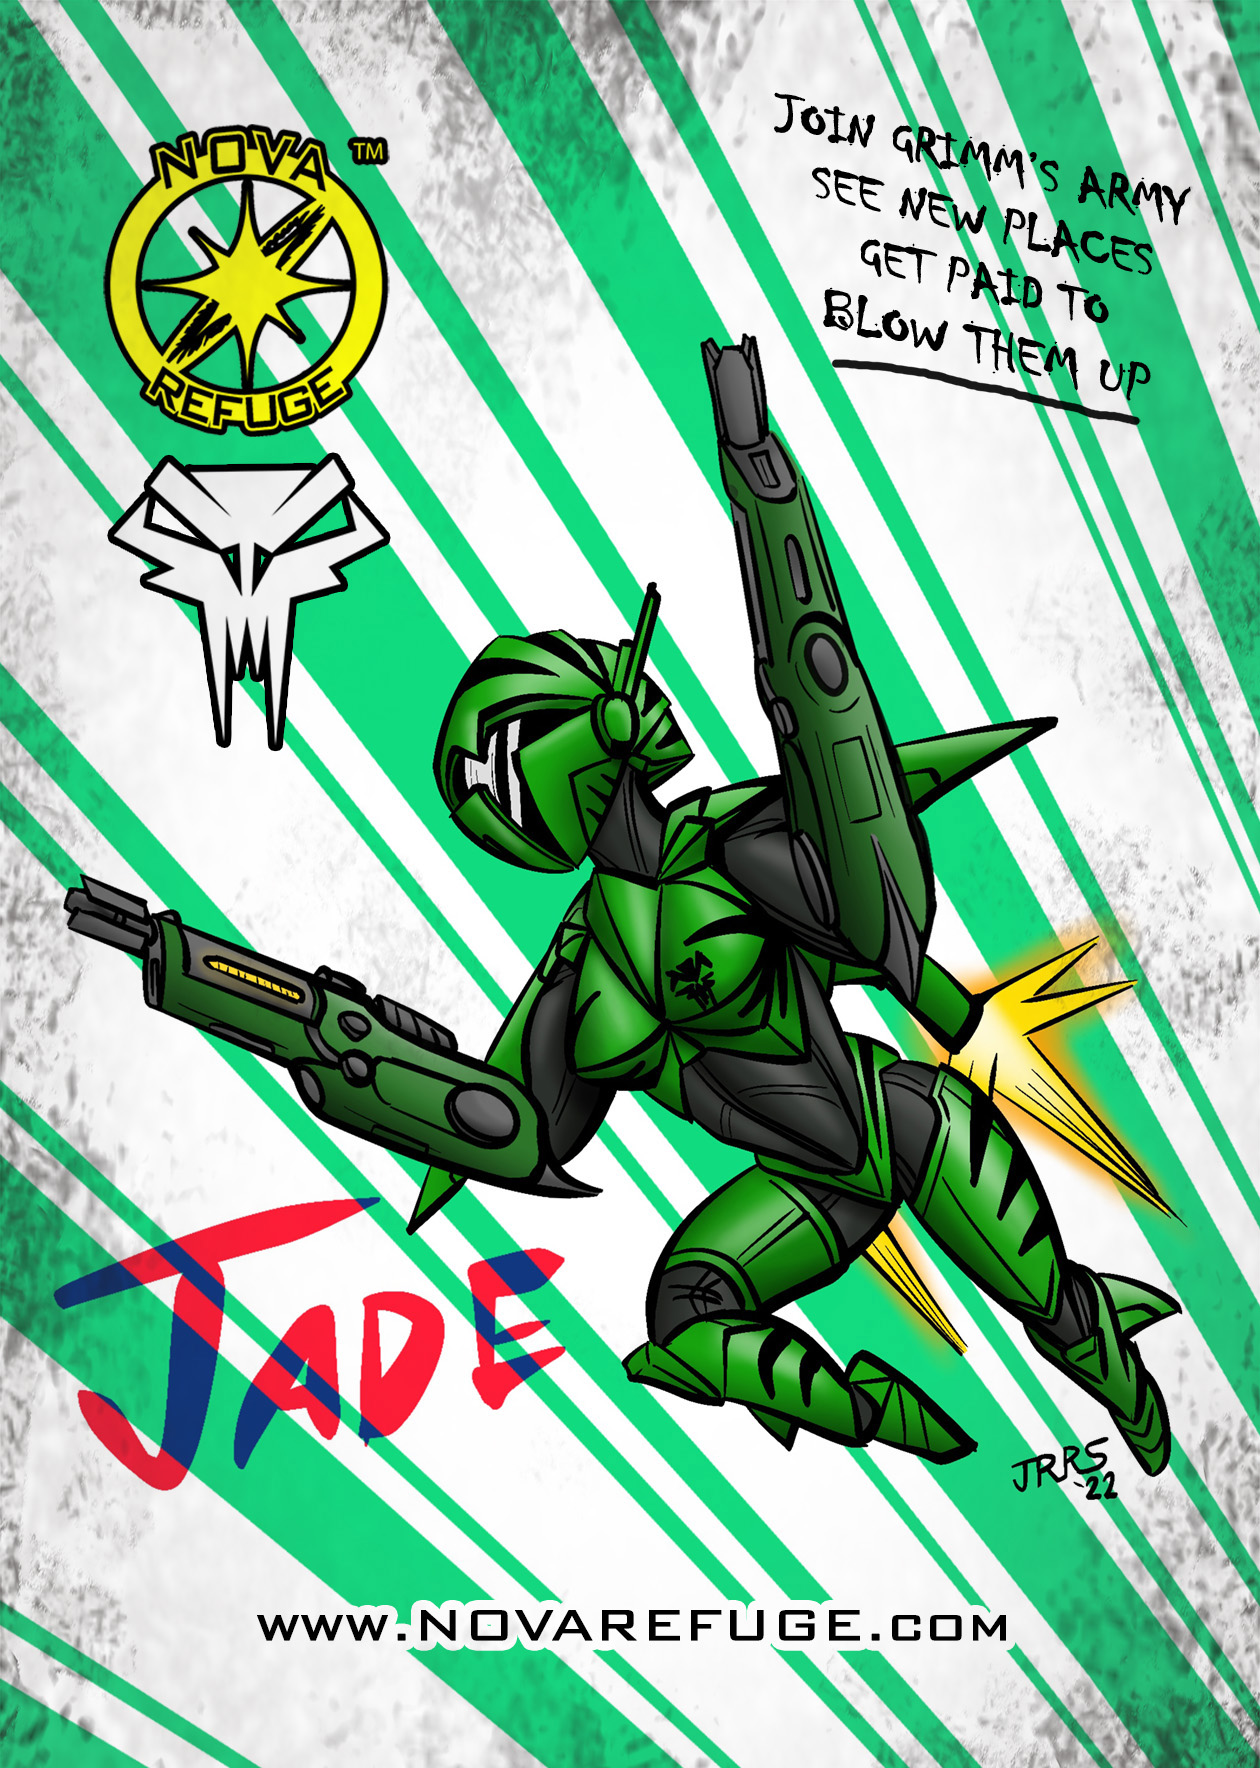 Nova Refuge: Jade Grimm's Army Recruitment Poster